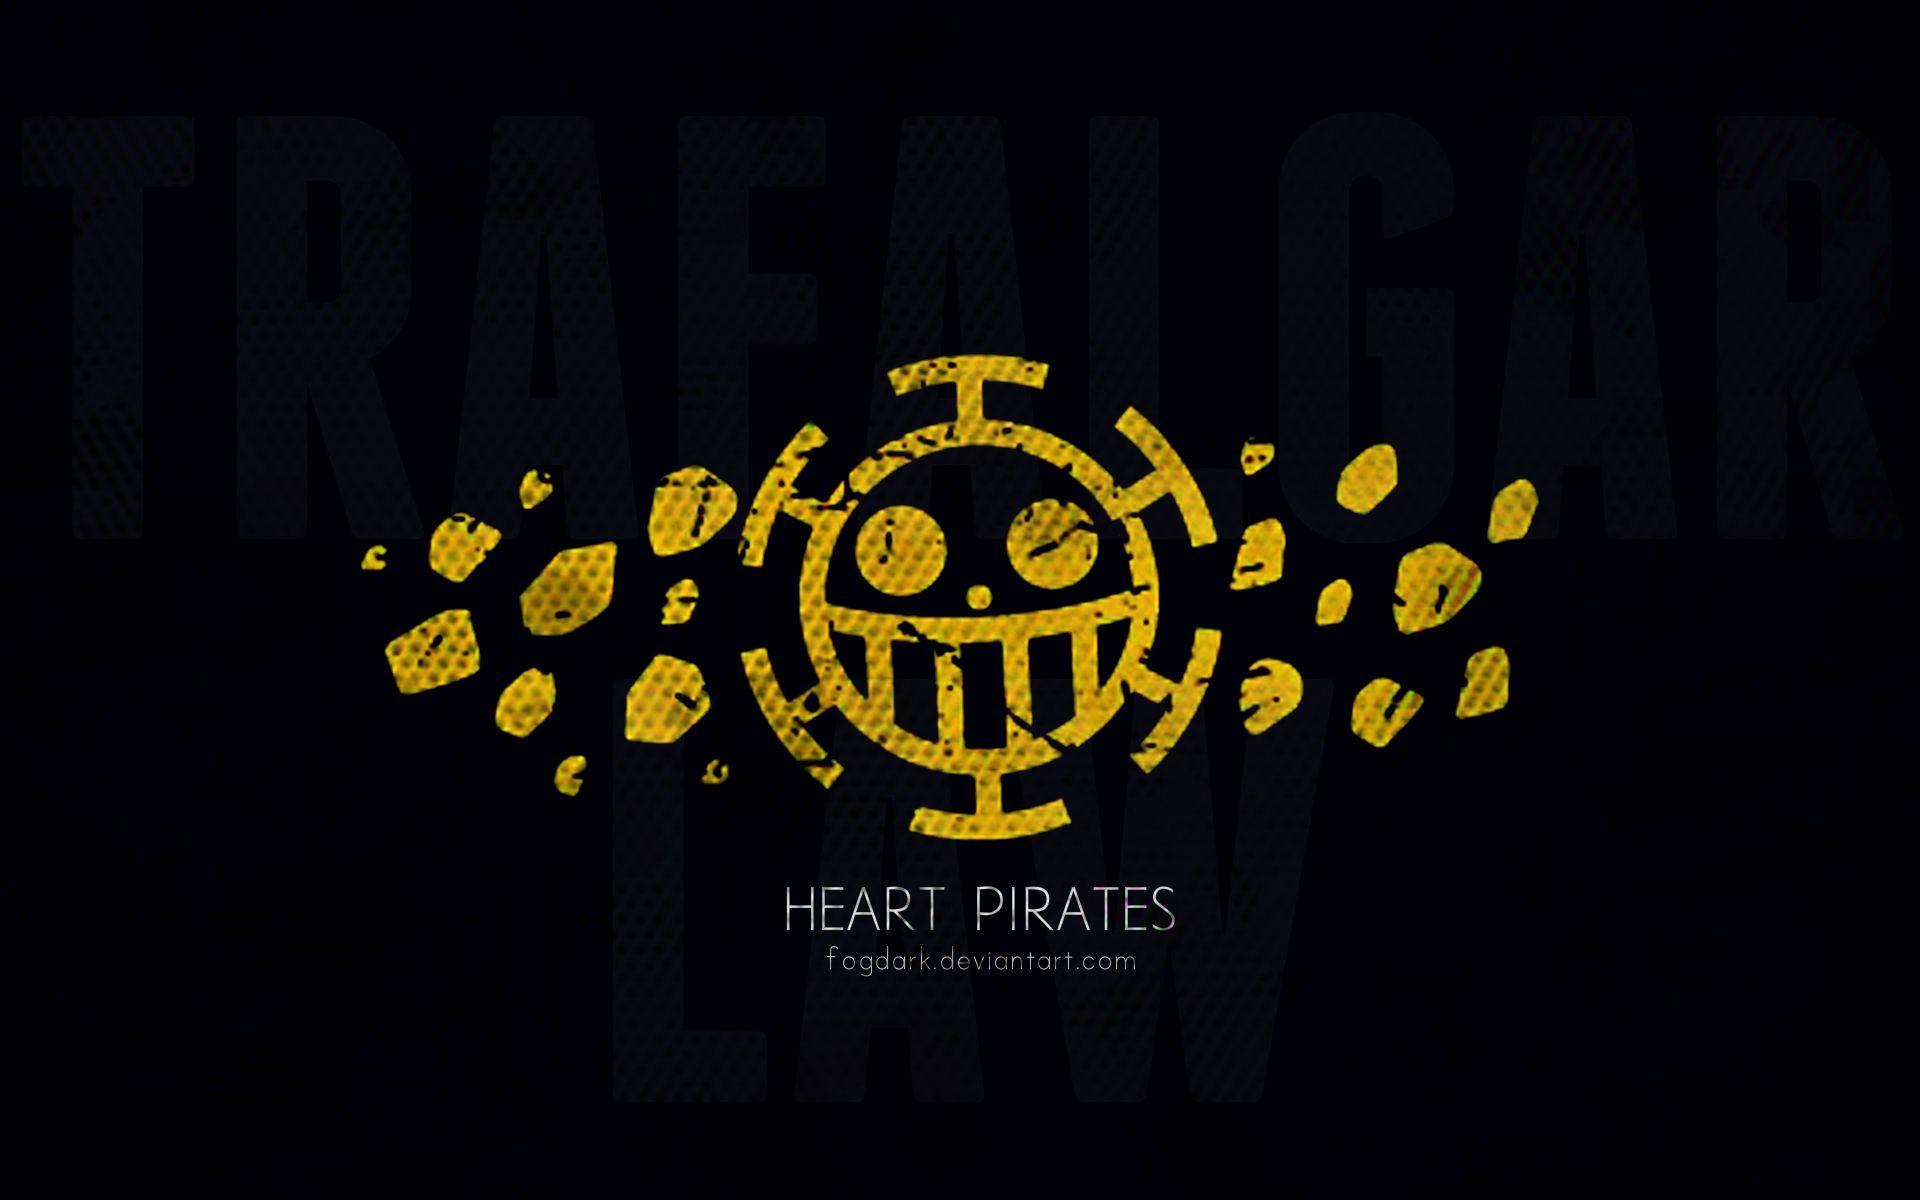 Heart Pirates Logo Black Wallpaper Anime Pictu Wallpaper